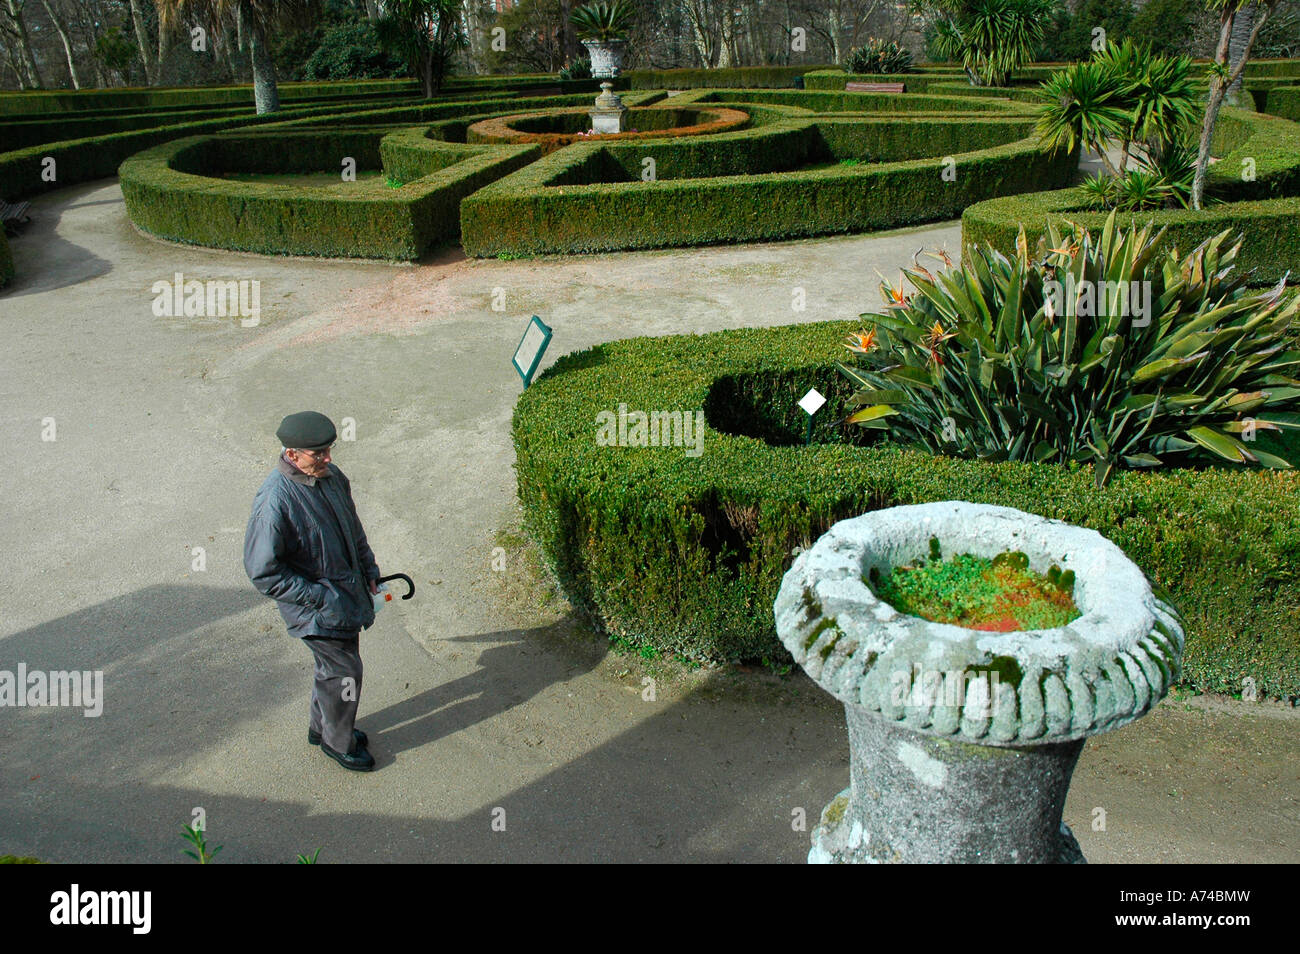 Pazo de Castrelos gardens VIGO Pontevedra province Galicia region Spain Stock Photo